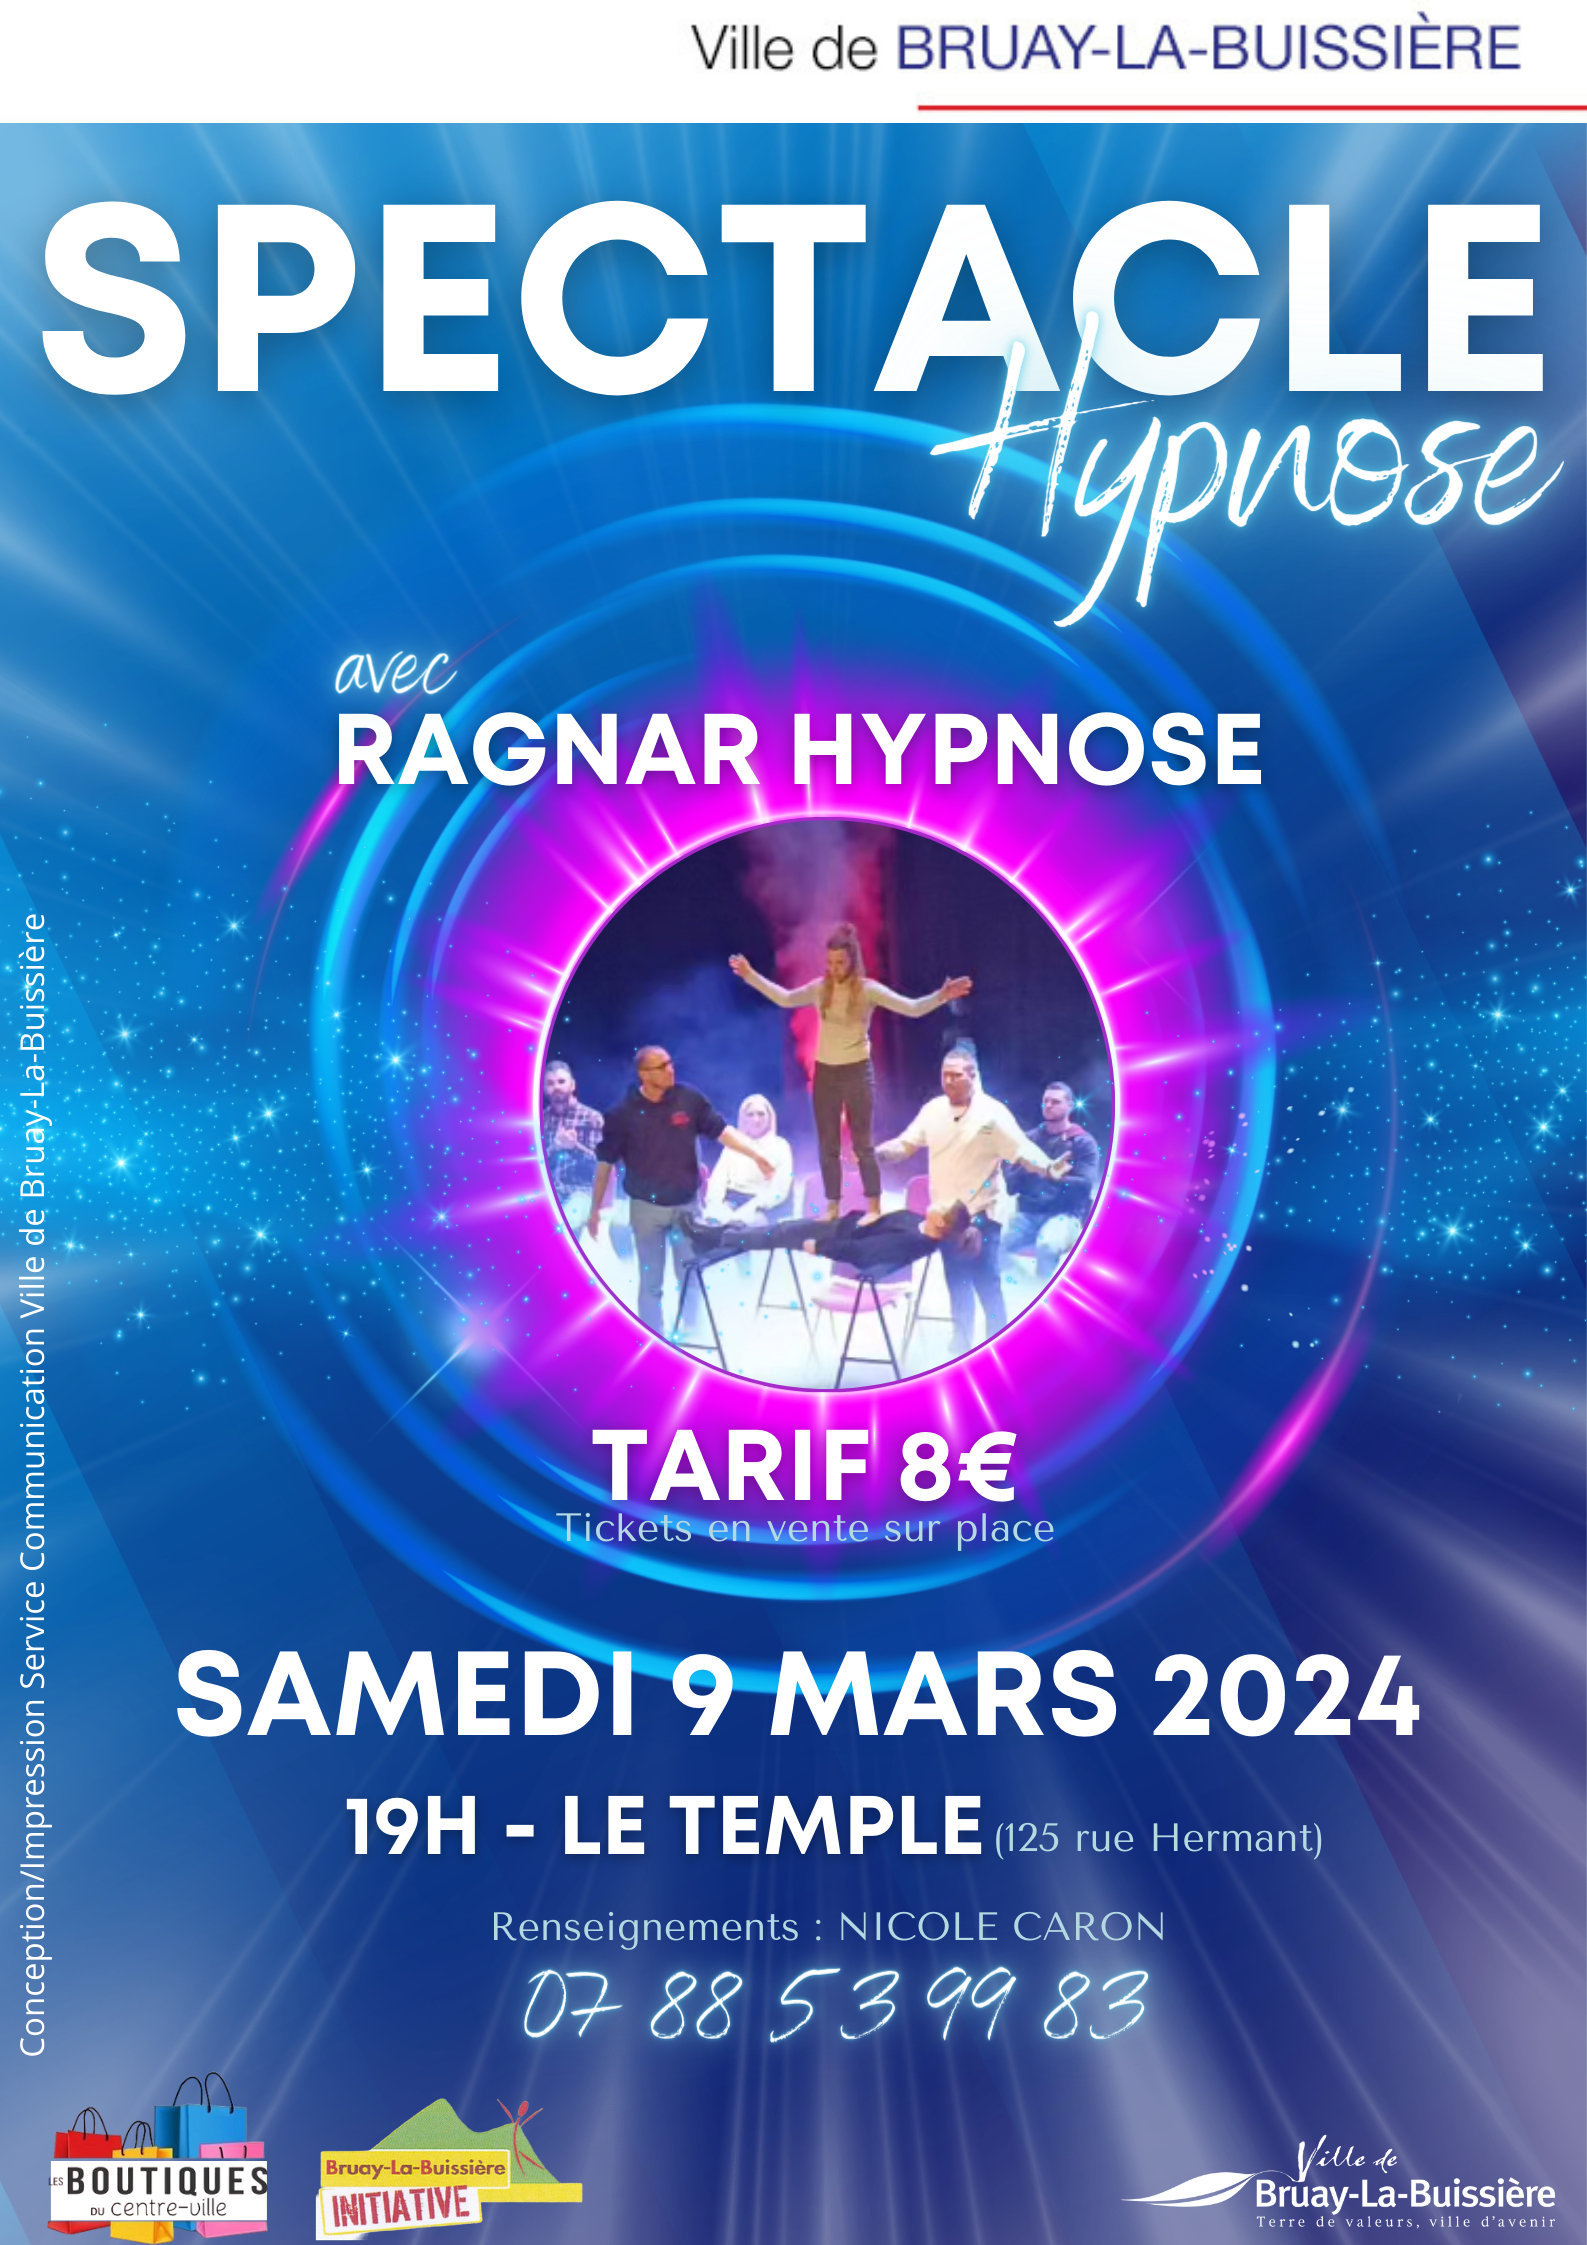 Spectacle d'hypnose Ragnar BLBI 2024